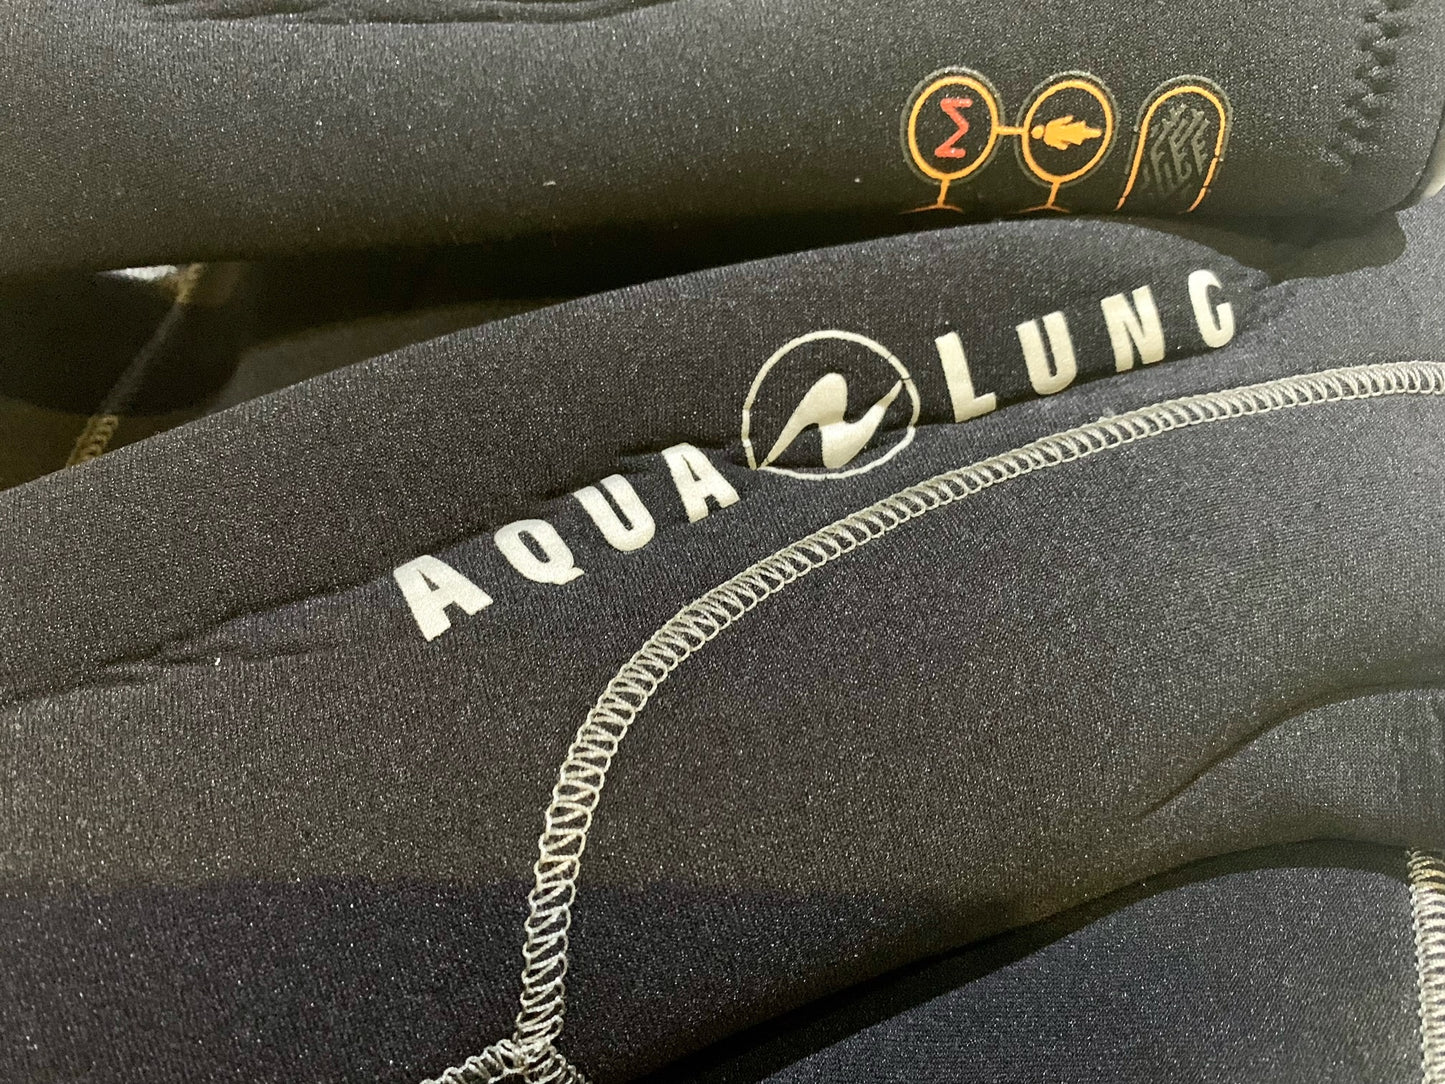 Aqua Lung 潜水衣带兜帽 6.5 毫米高密度女式 - M 码 二手